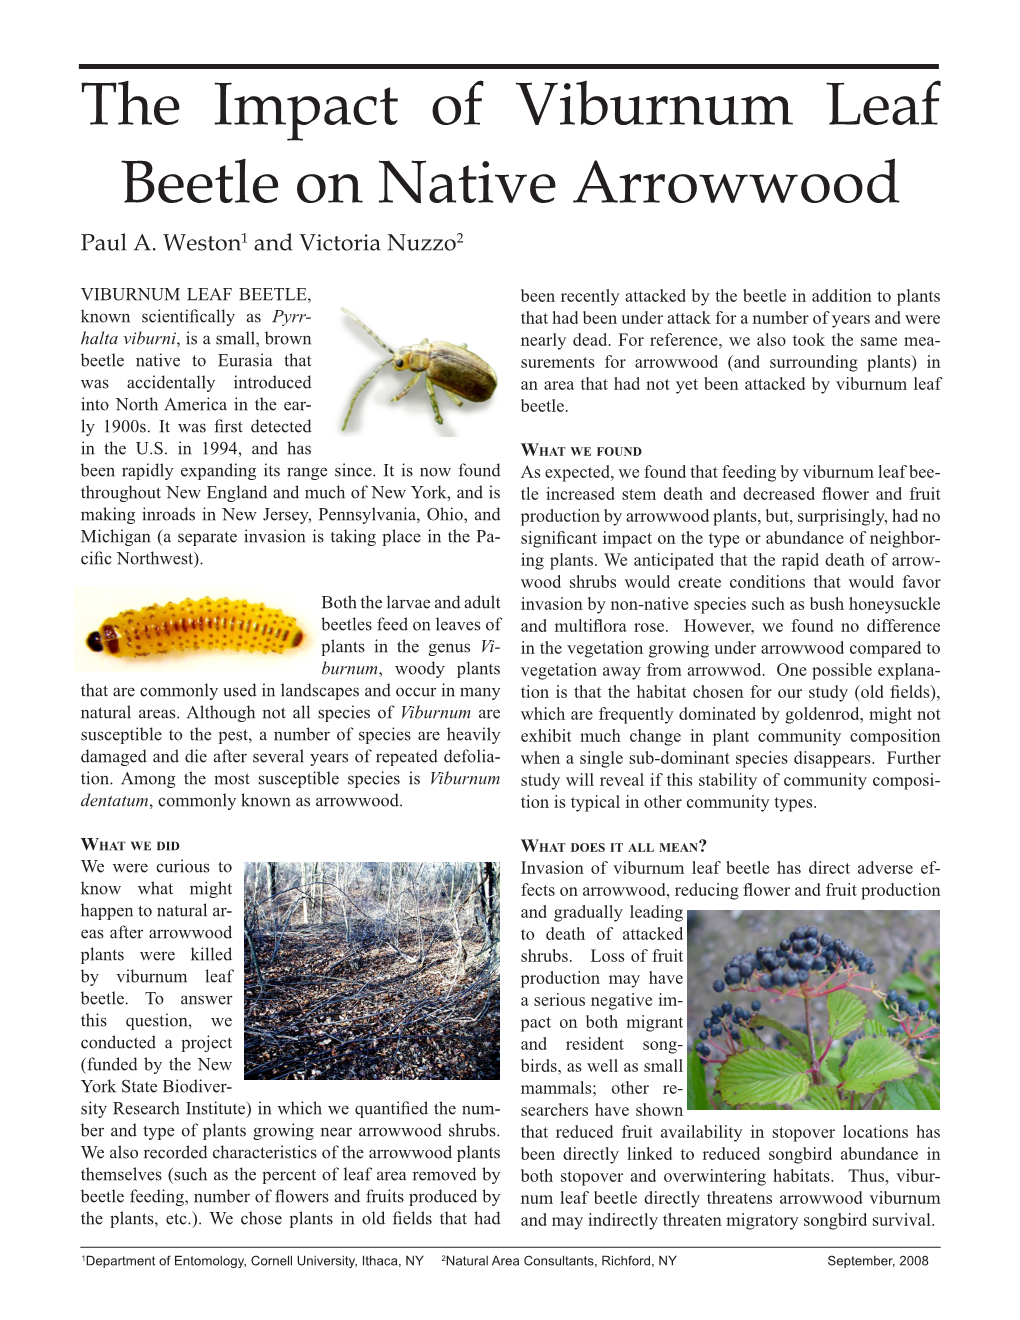 The Impact of Viburnum Leaf Beetle on Native Arrowwood Paul A